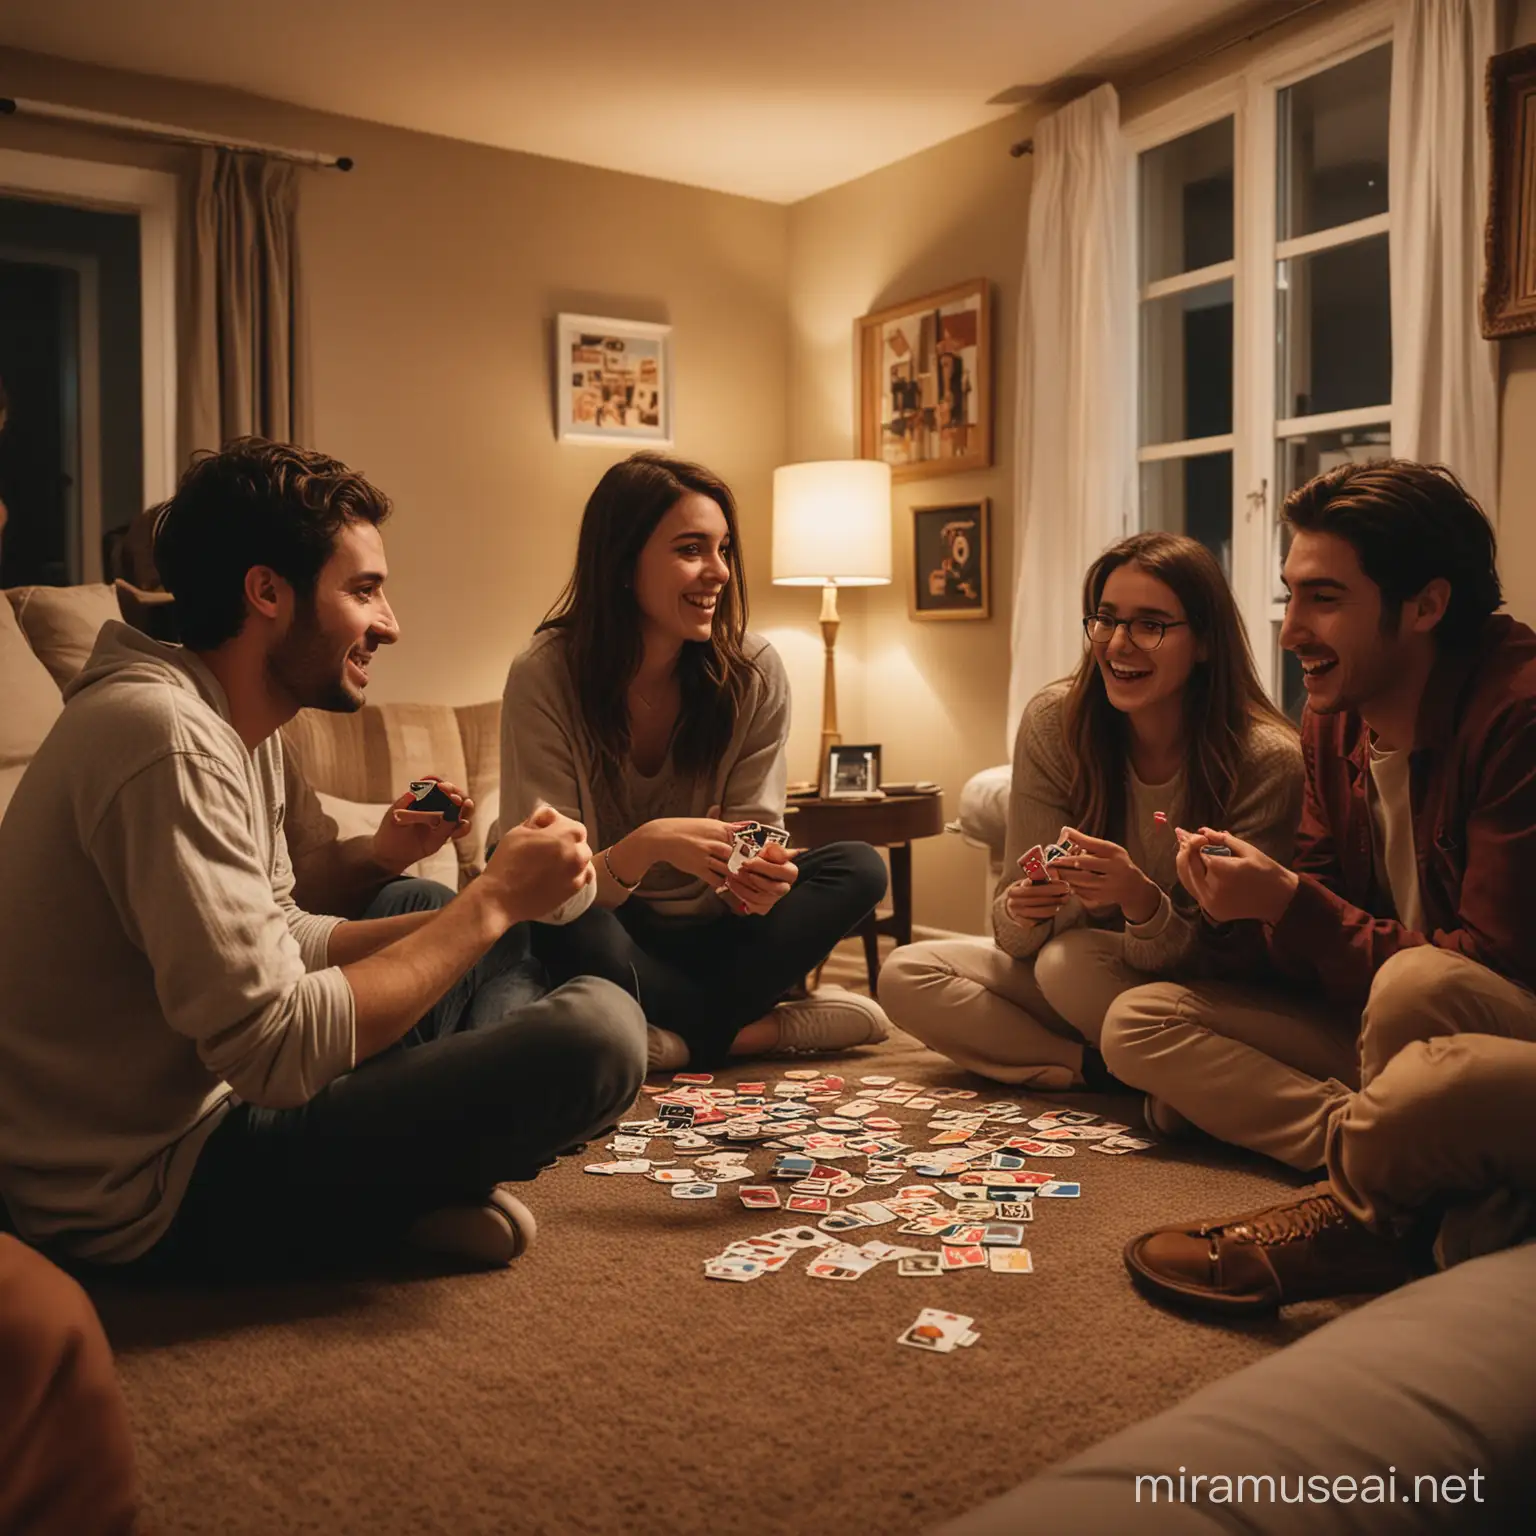 cinco amigos y amigas universitarios jugando a las cartas UNO en la sala de una casa. La sala esta poco iluminada y tiene tonos cálidos.